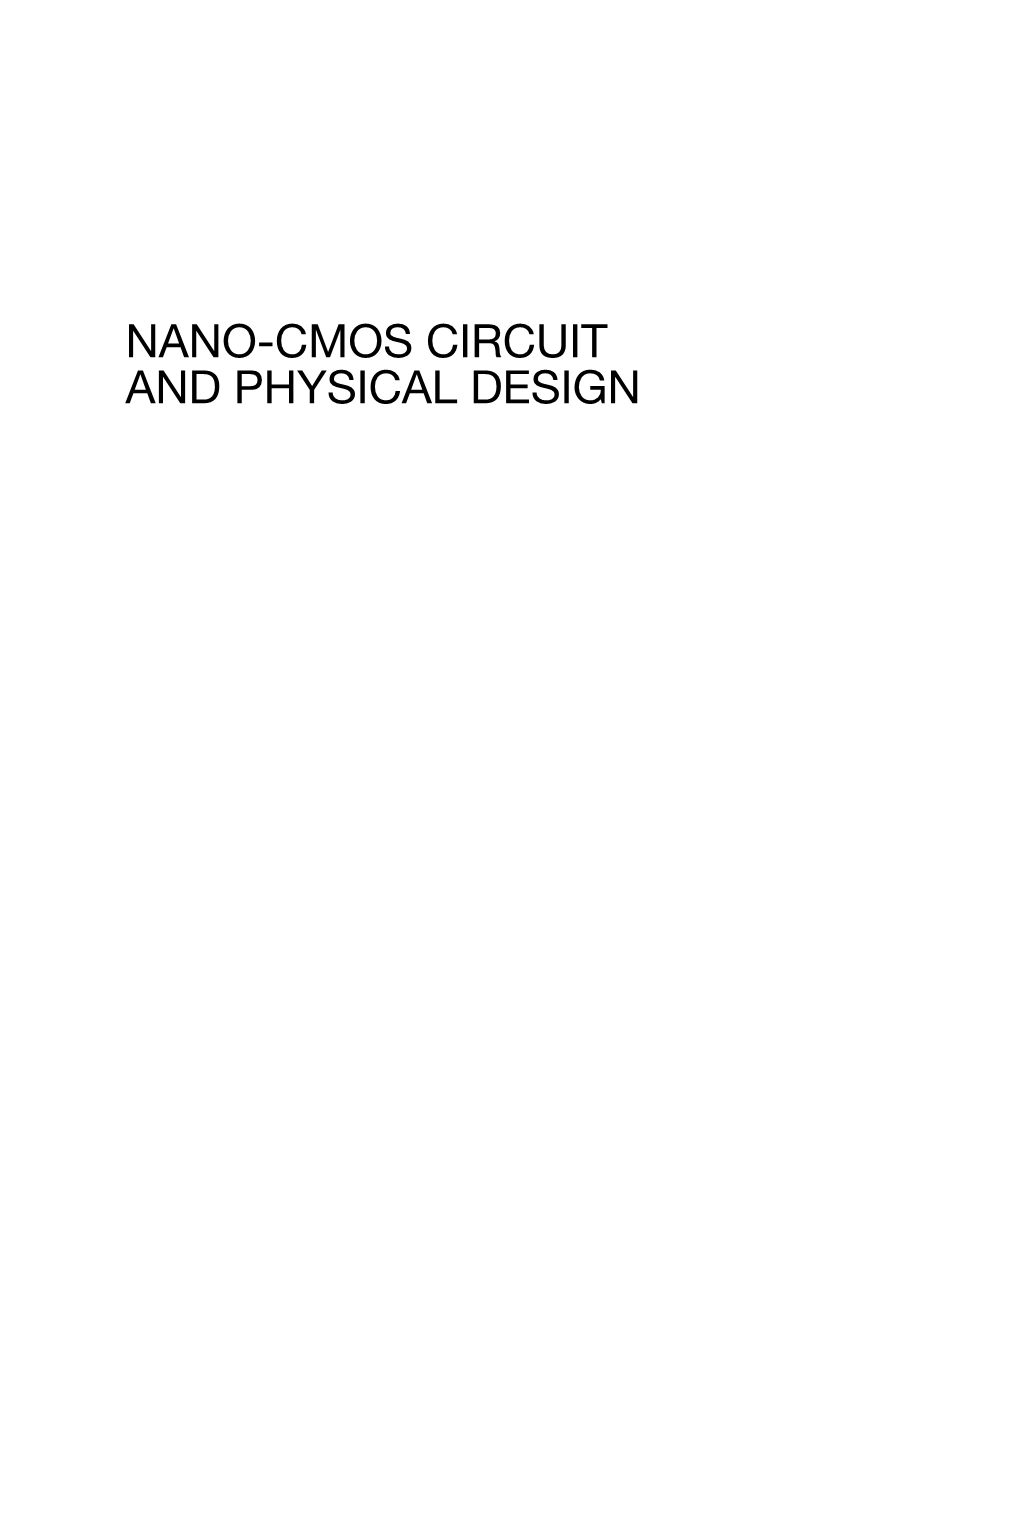 Nano-Cmos Circuit and Physical Design Nano-Cmos Circuit and Physical Design